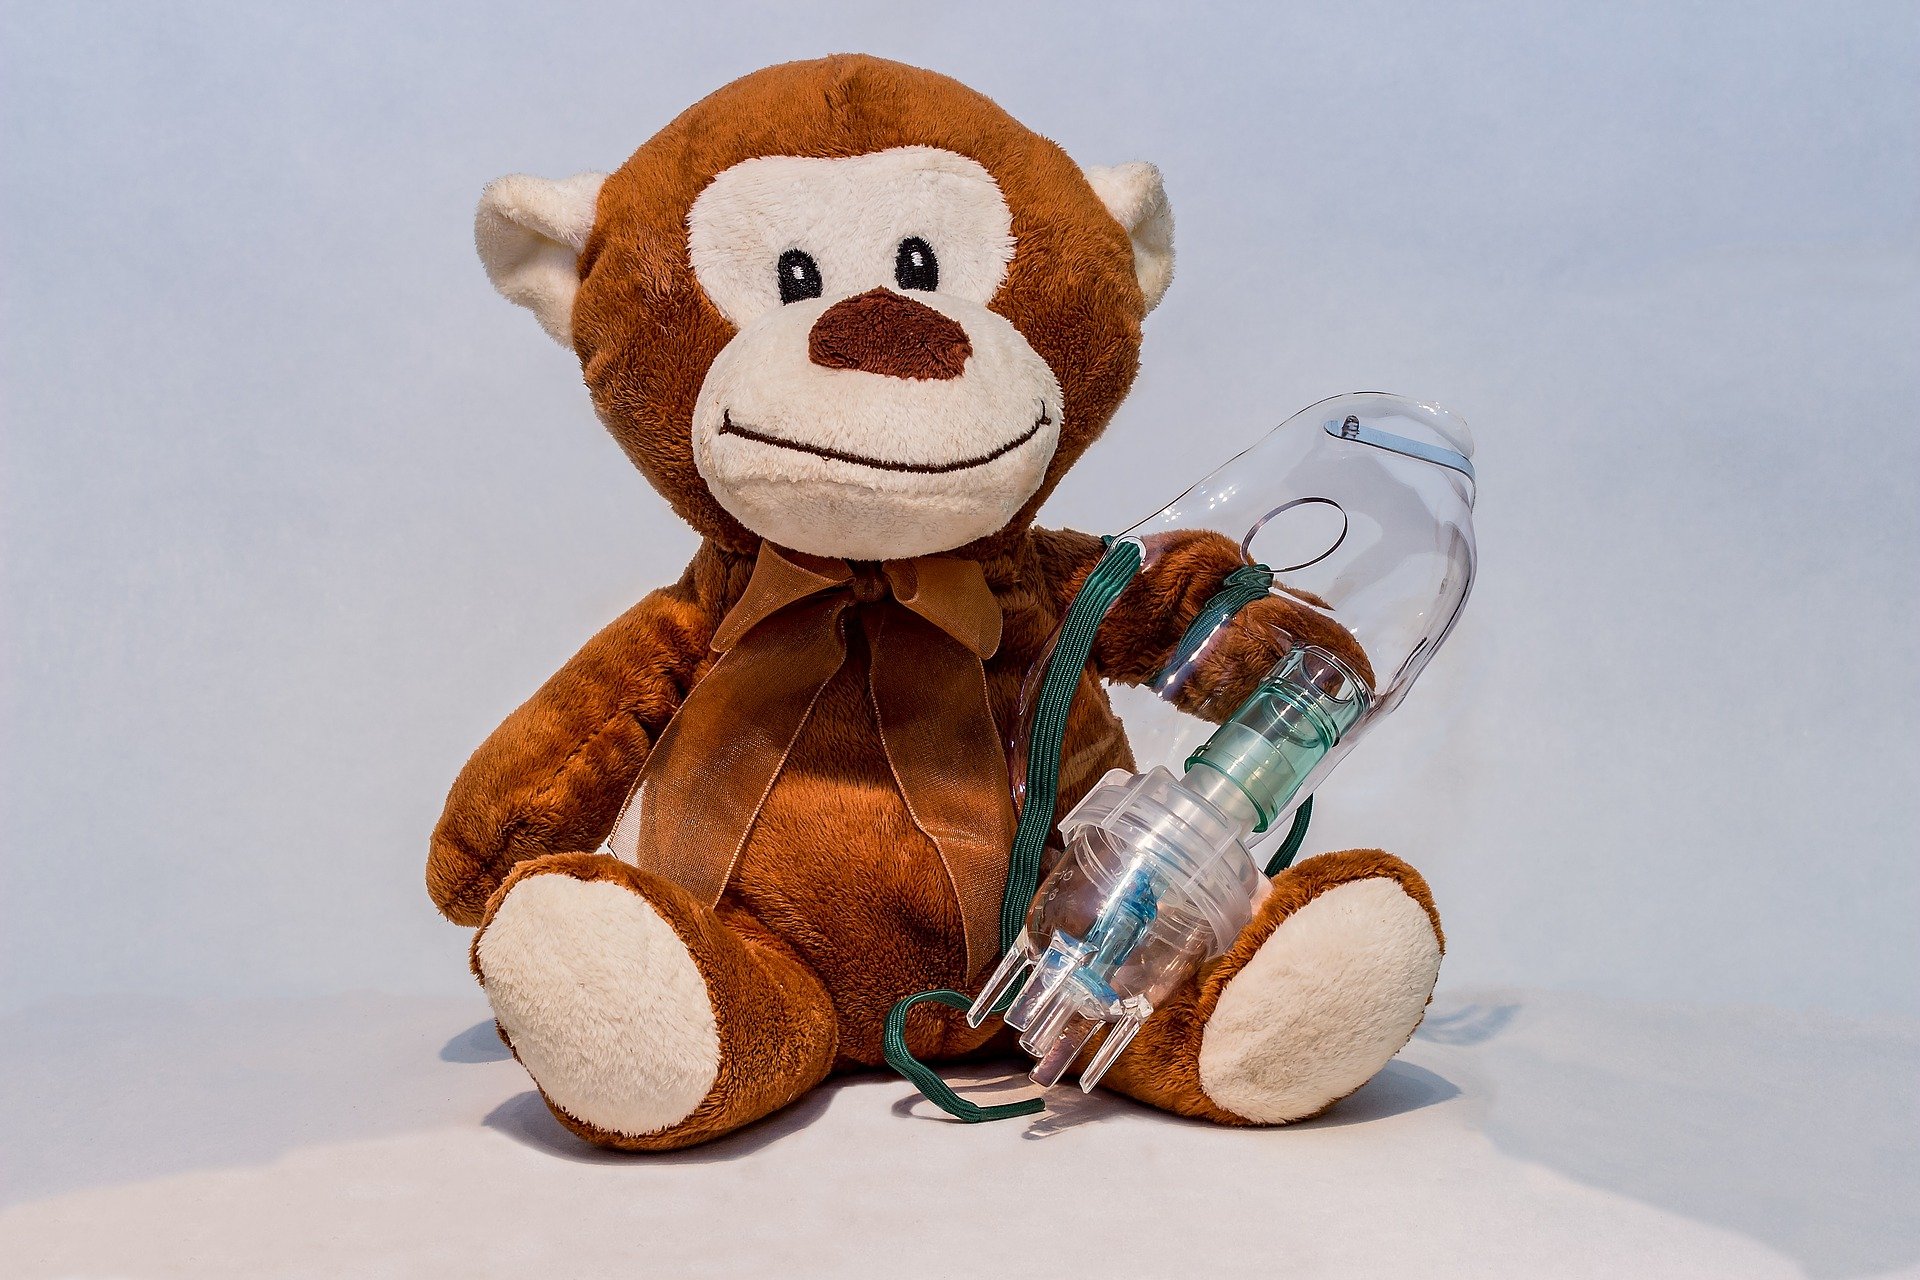 Teddy bear with an oxygen mask.